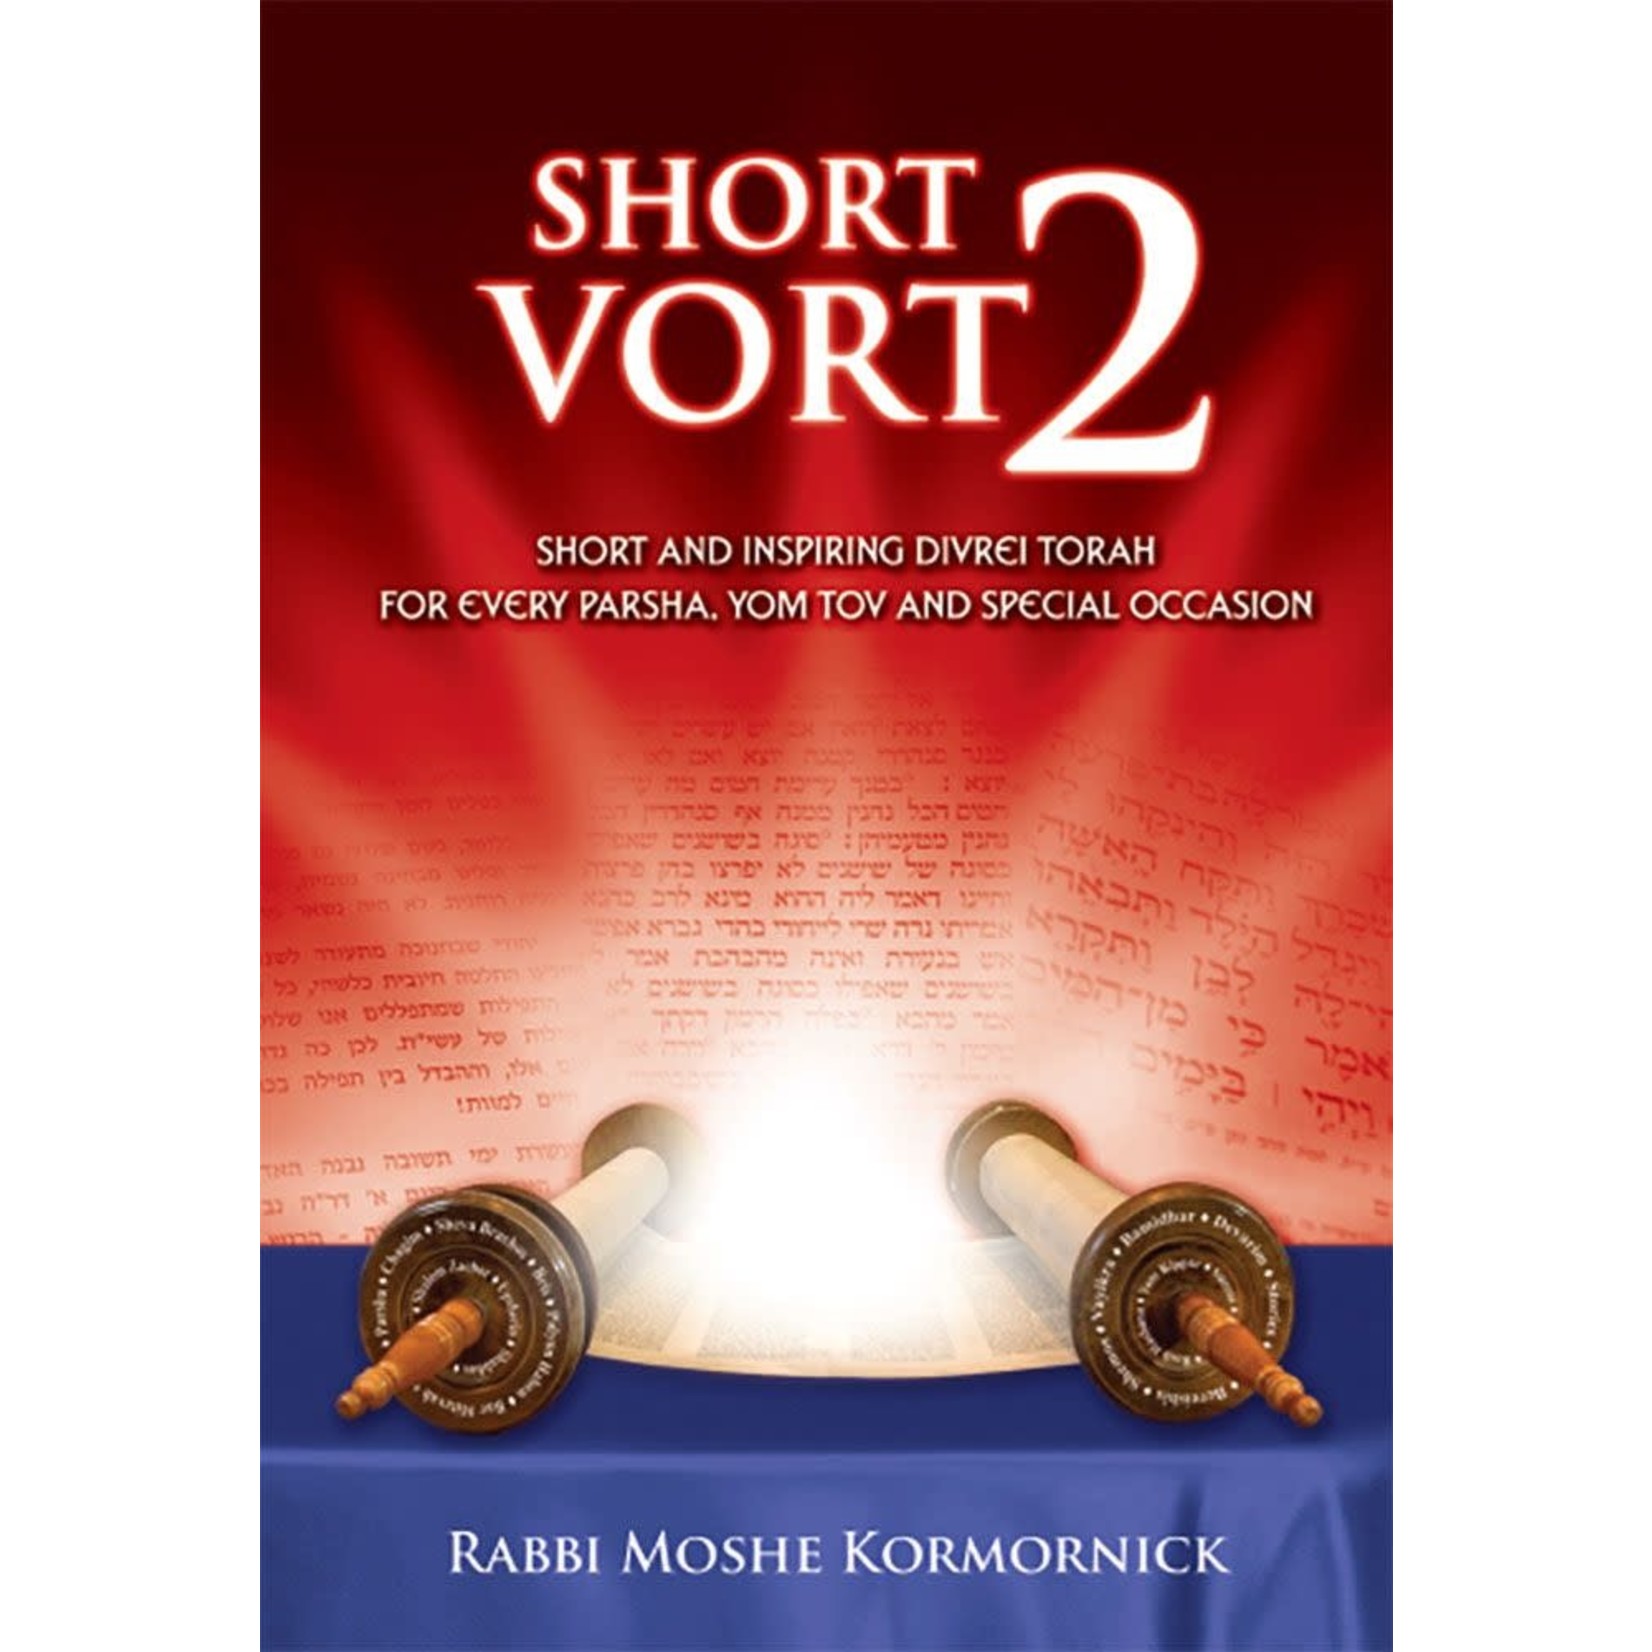 Short Vort, volume 2